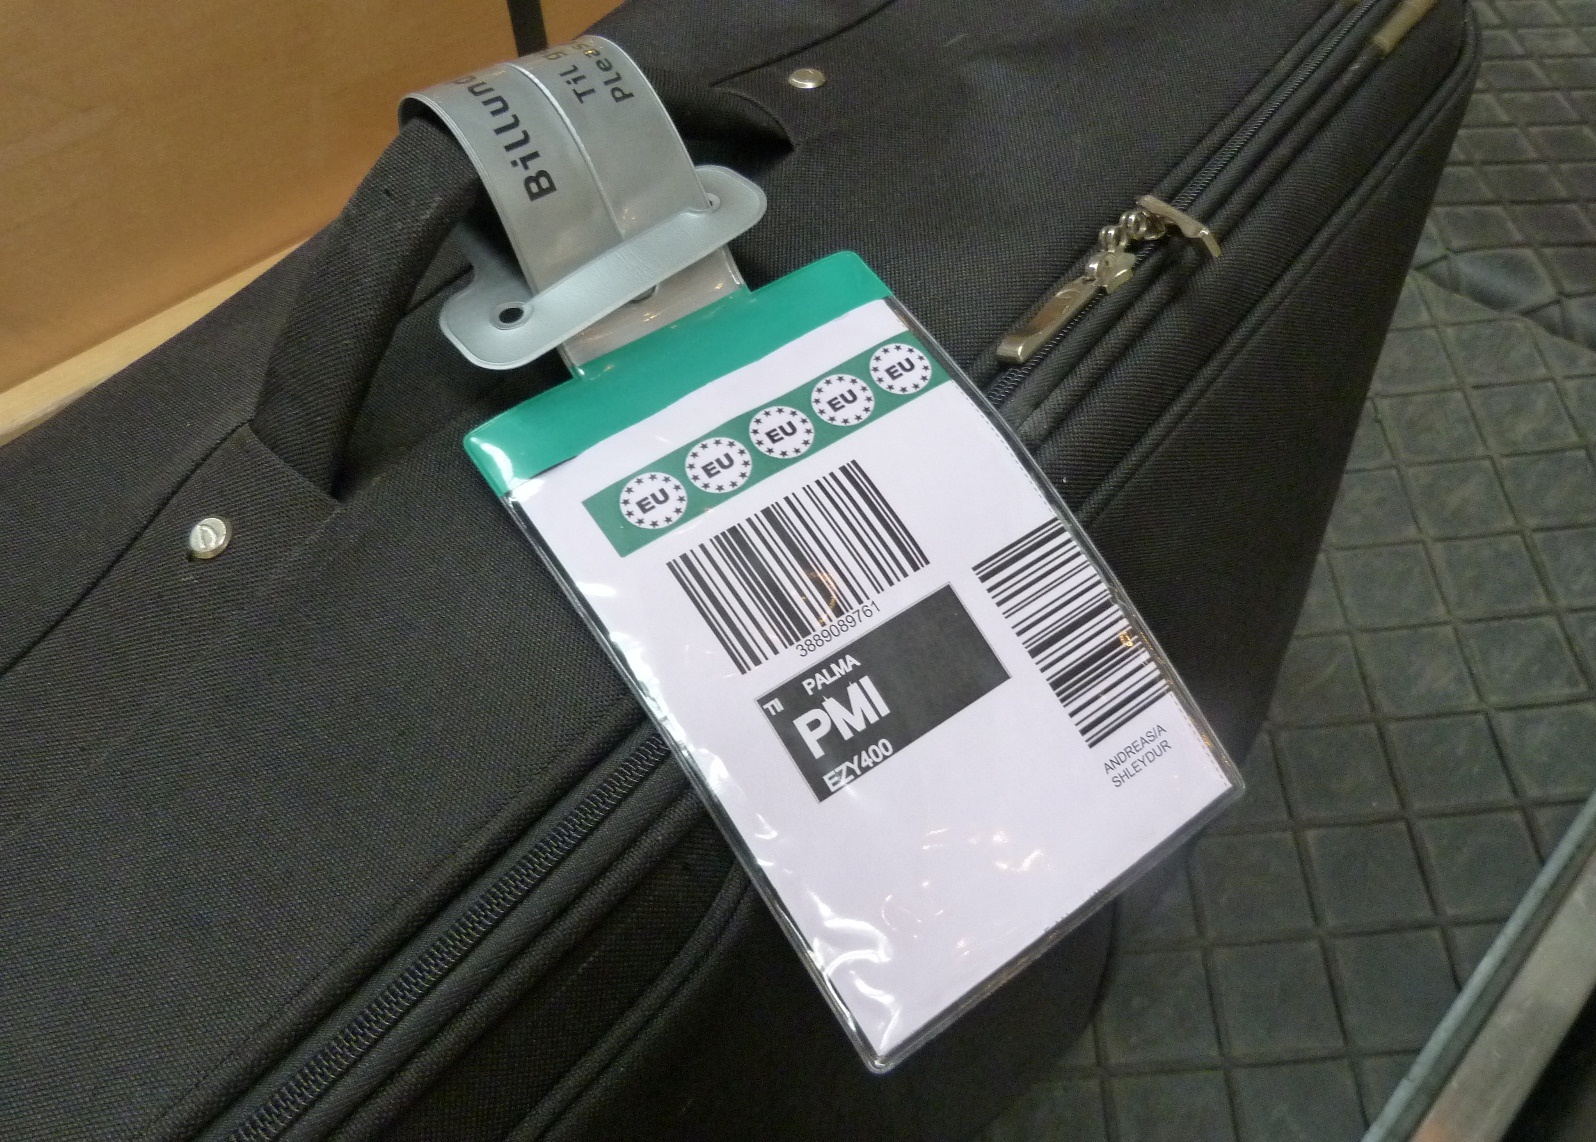 Tilmeld rig Skaldet Billund er først i verden med print af bagagemærker - CHECK-IN.DK